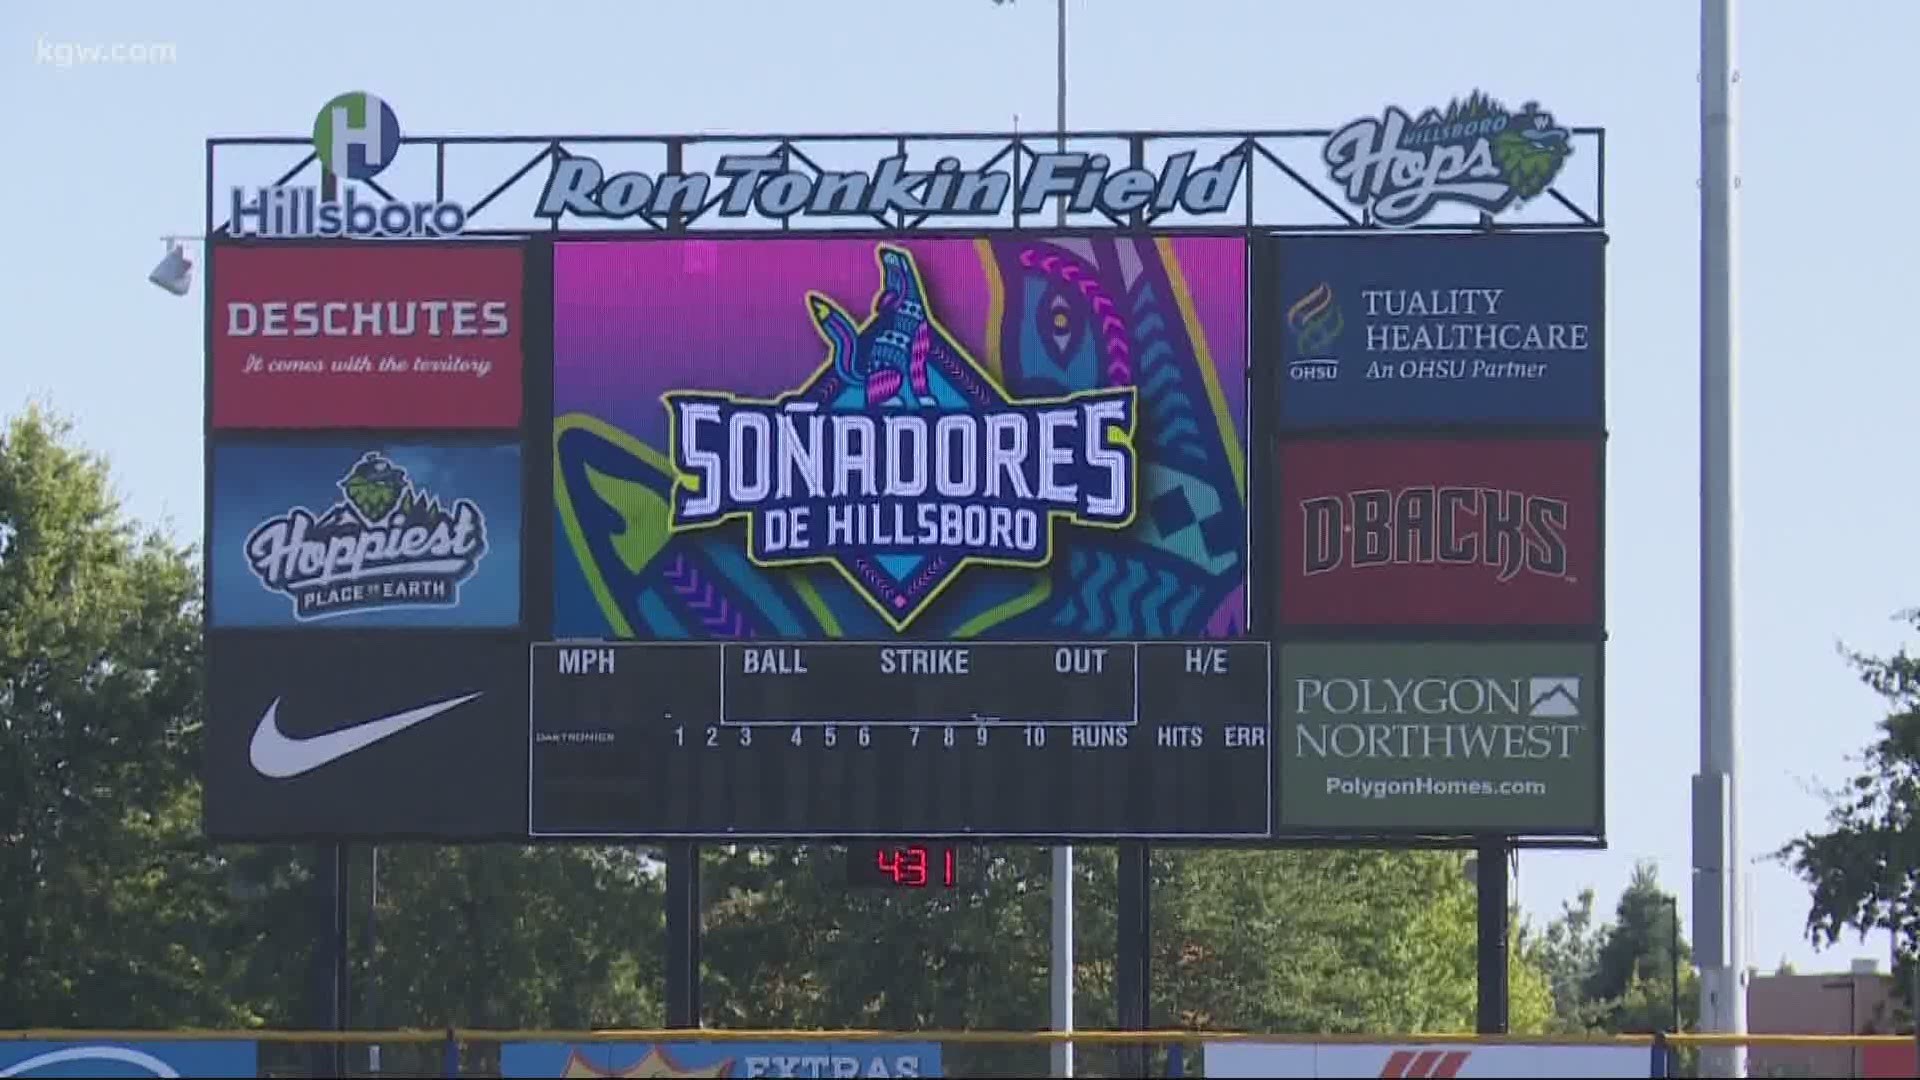 Hillsboro Hops baseball season canceled